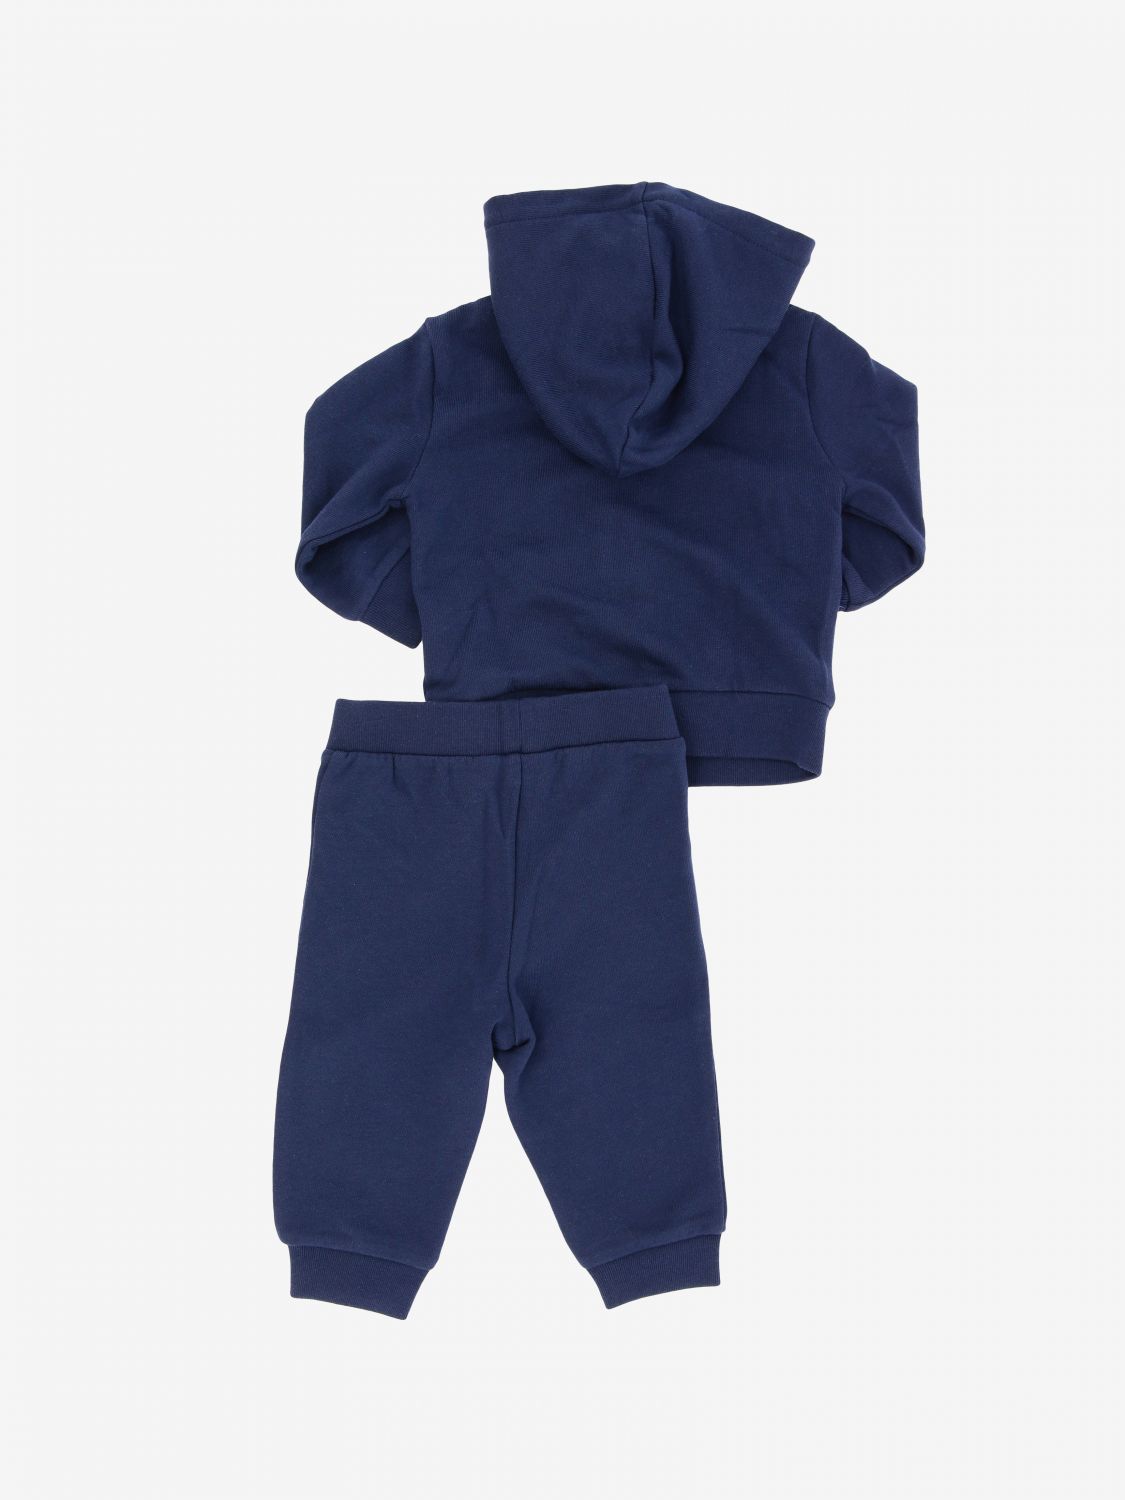 Polo Ralph Lauren Infant Outlet: sweatshirt + suit - Blue | Polo Ralph ...